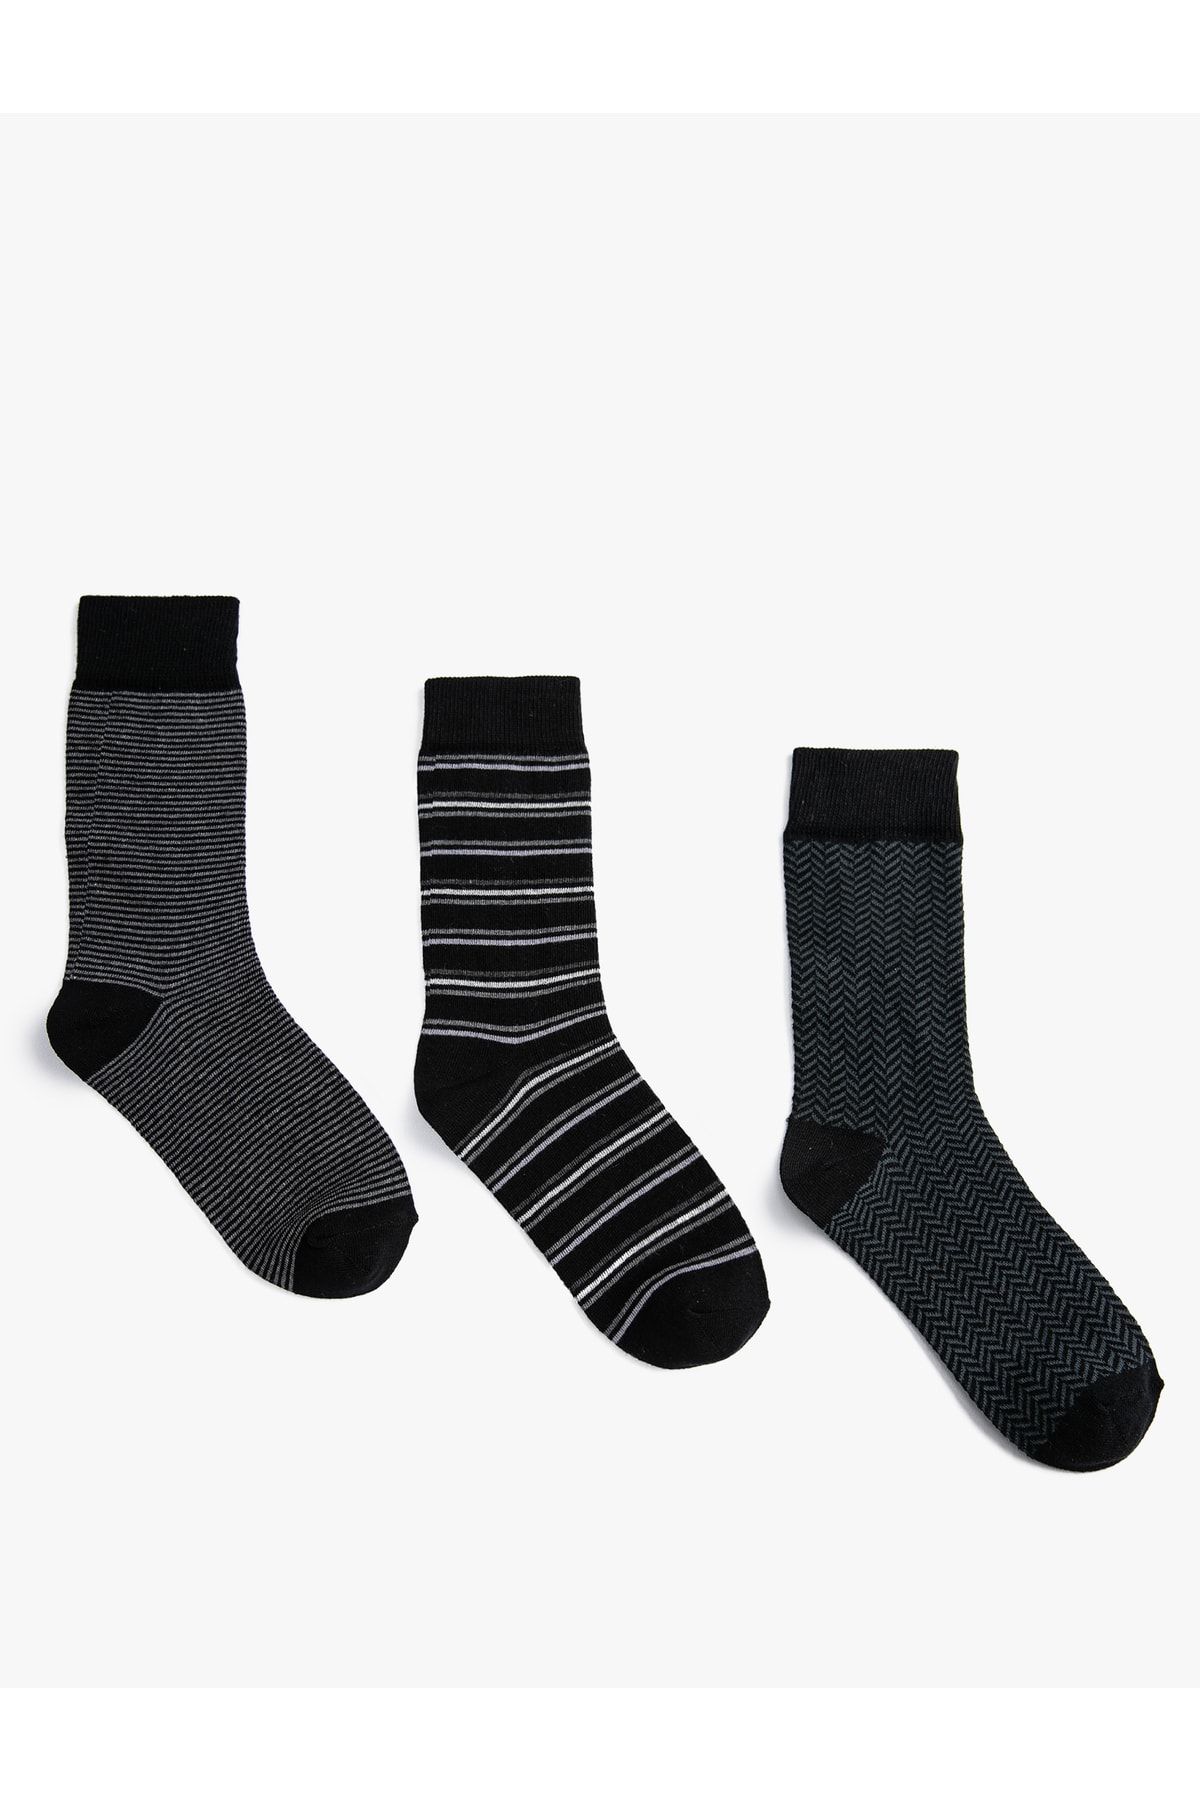 Koton Socken Blau 3er-Pack Fast ausverkauft